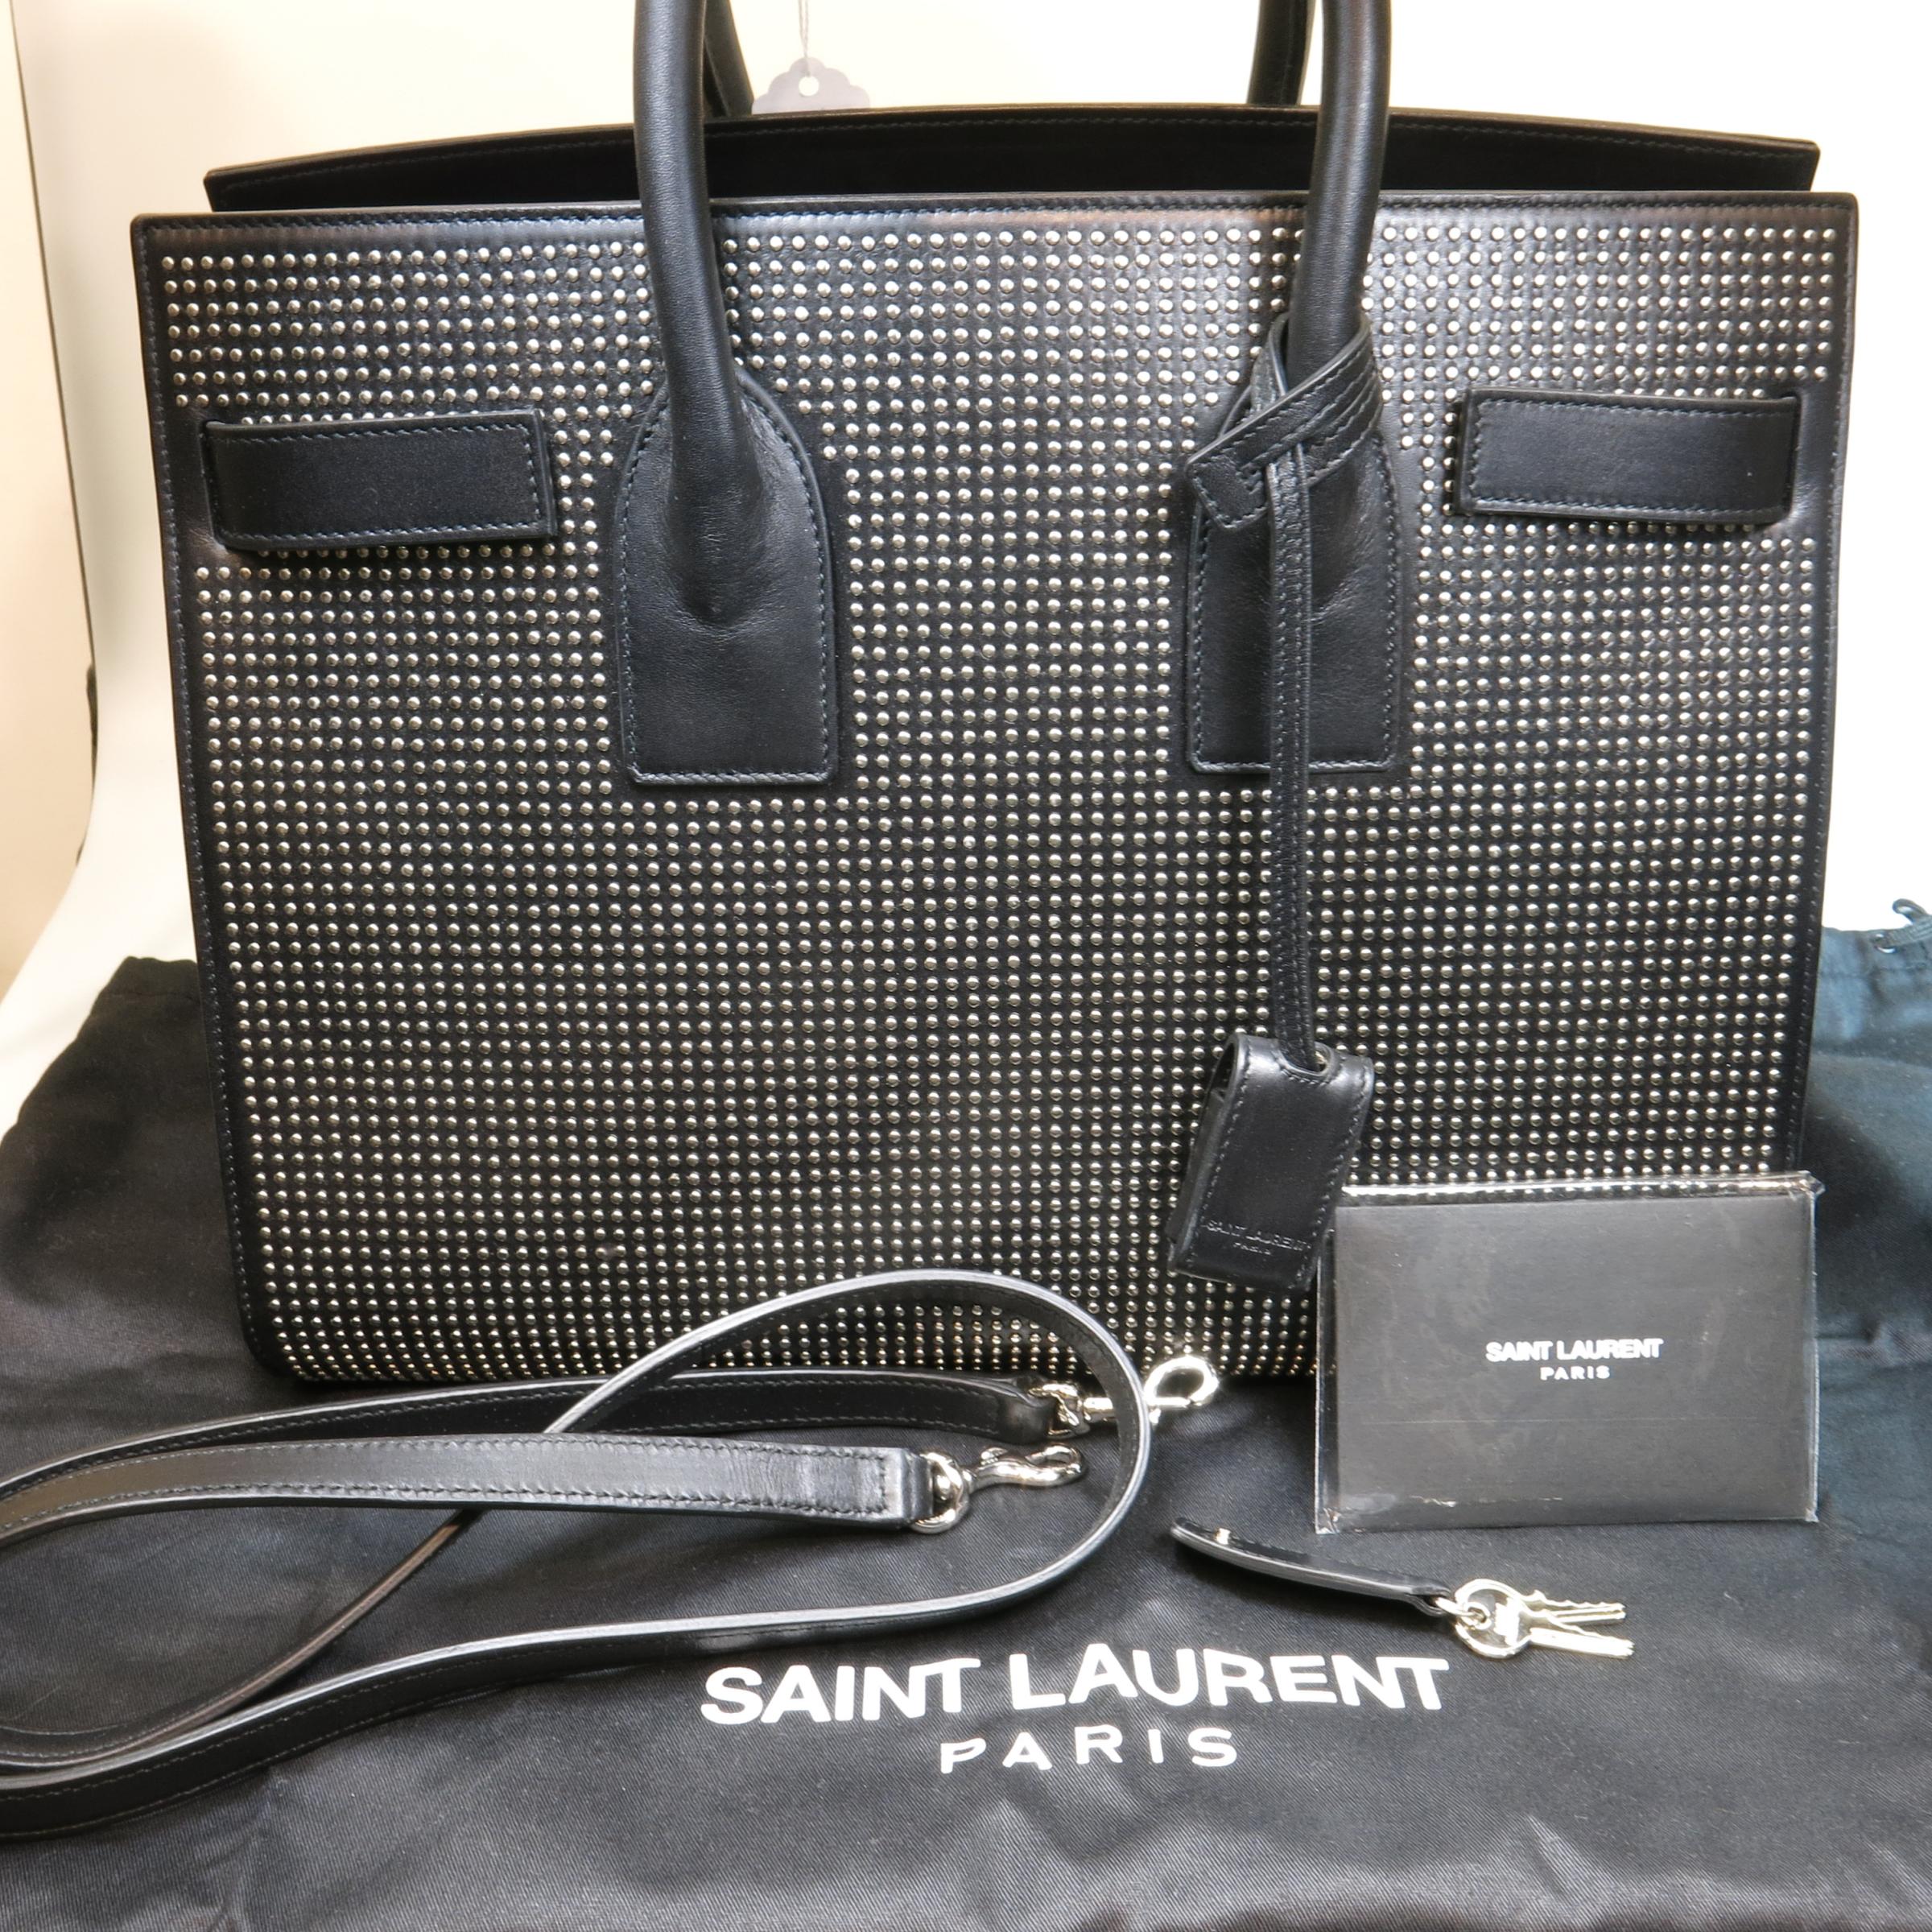 Saint Laurent Sac De Jour Studded Black Leather Bag